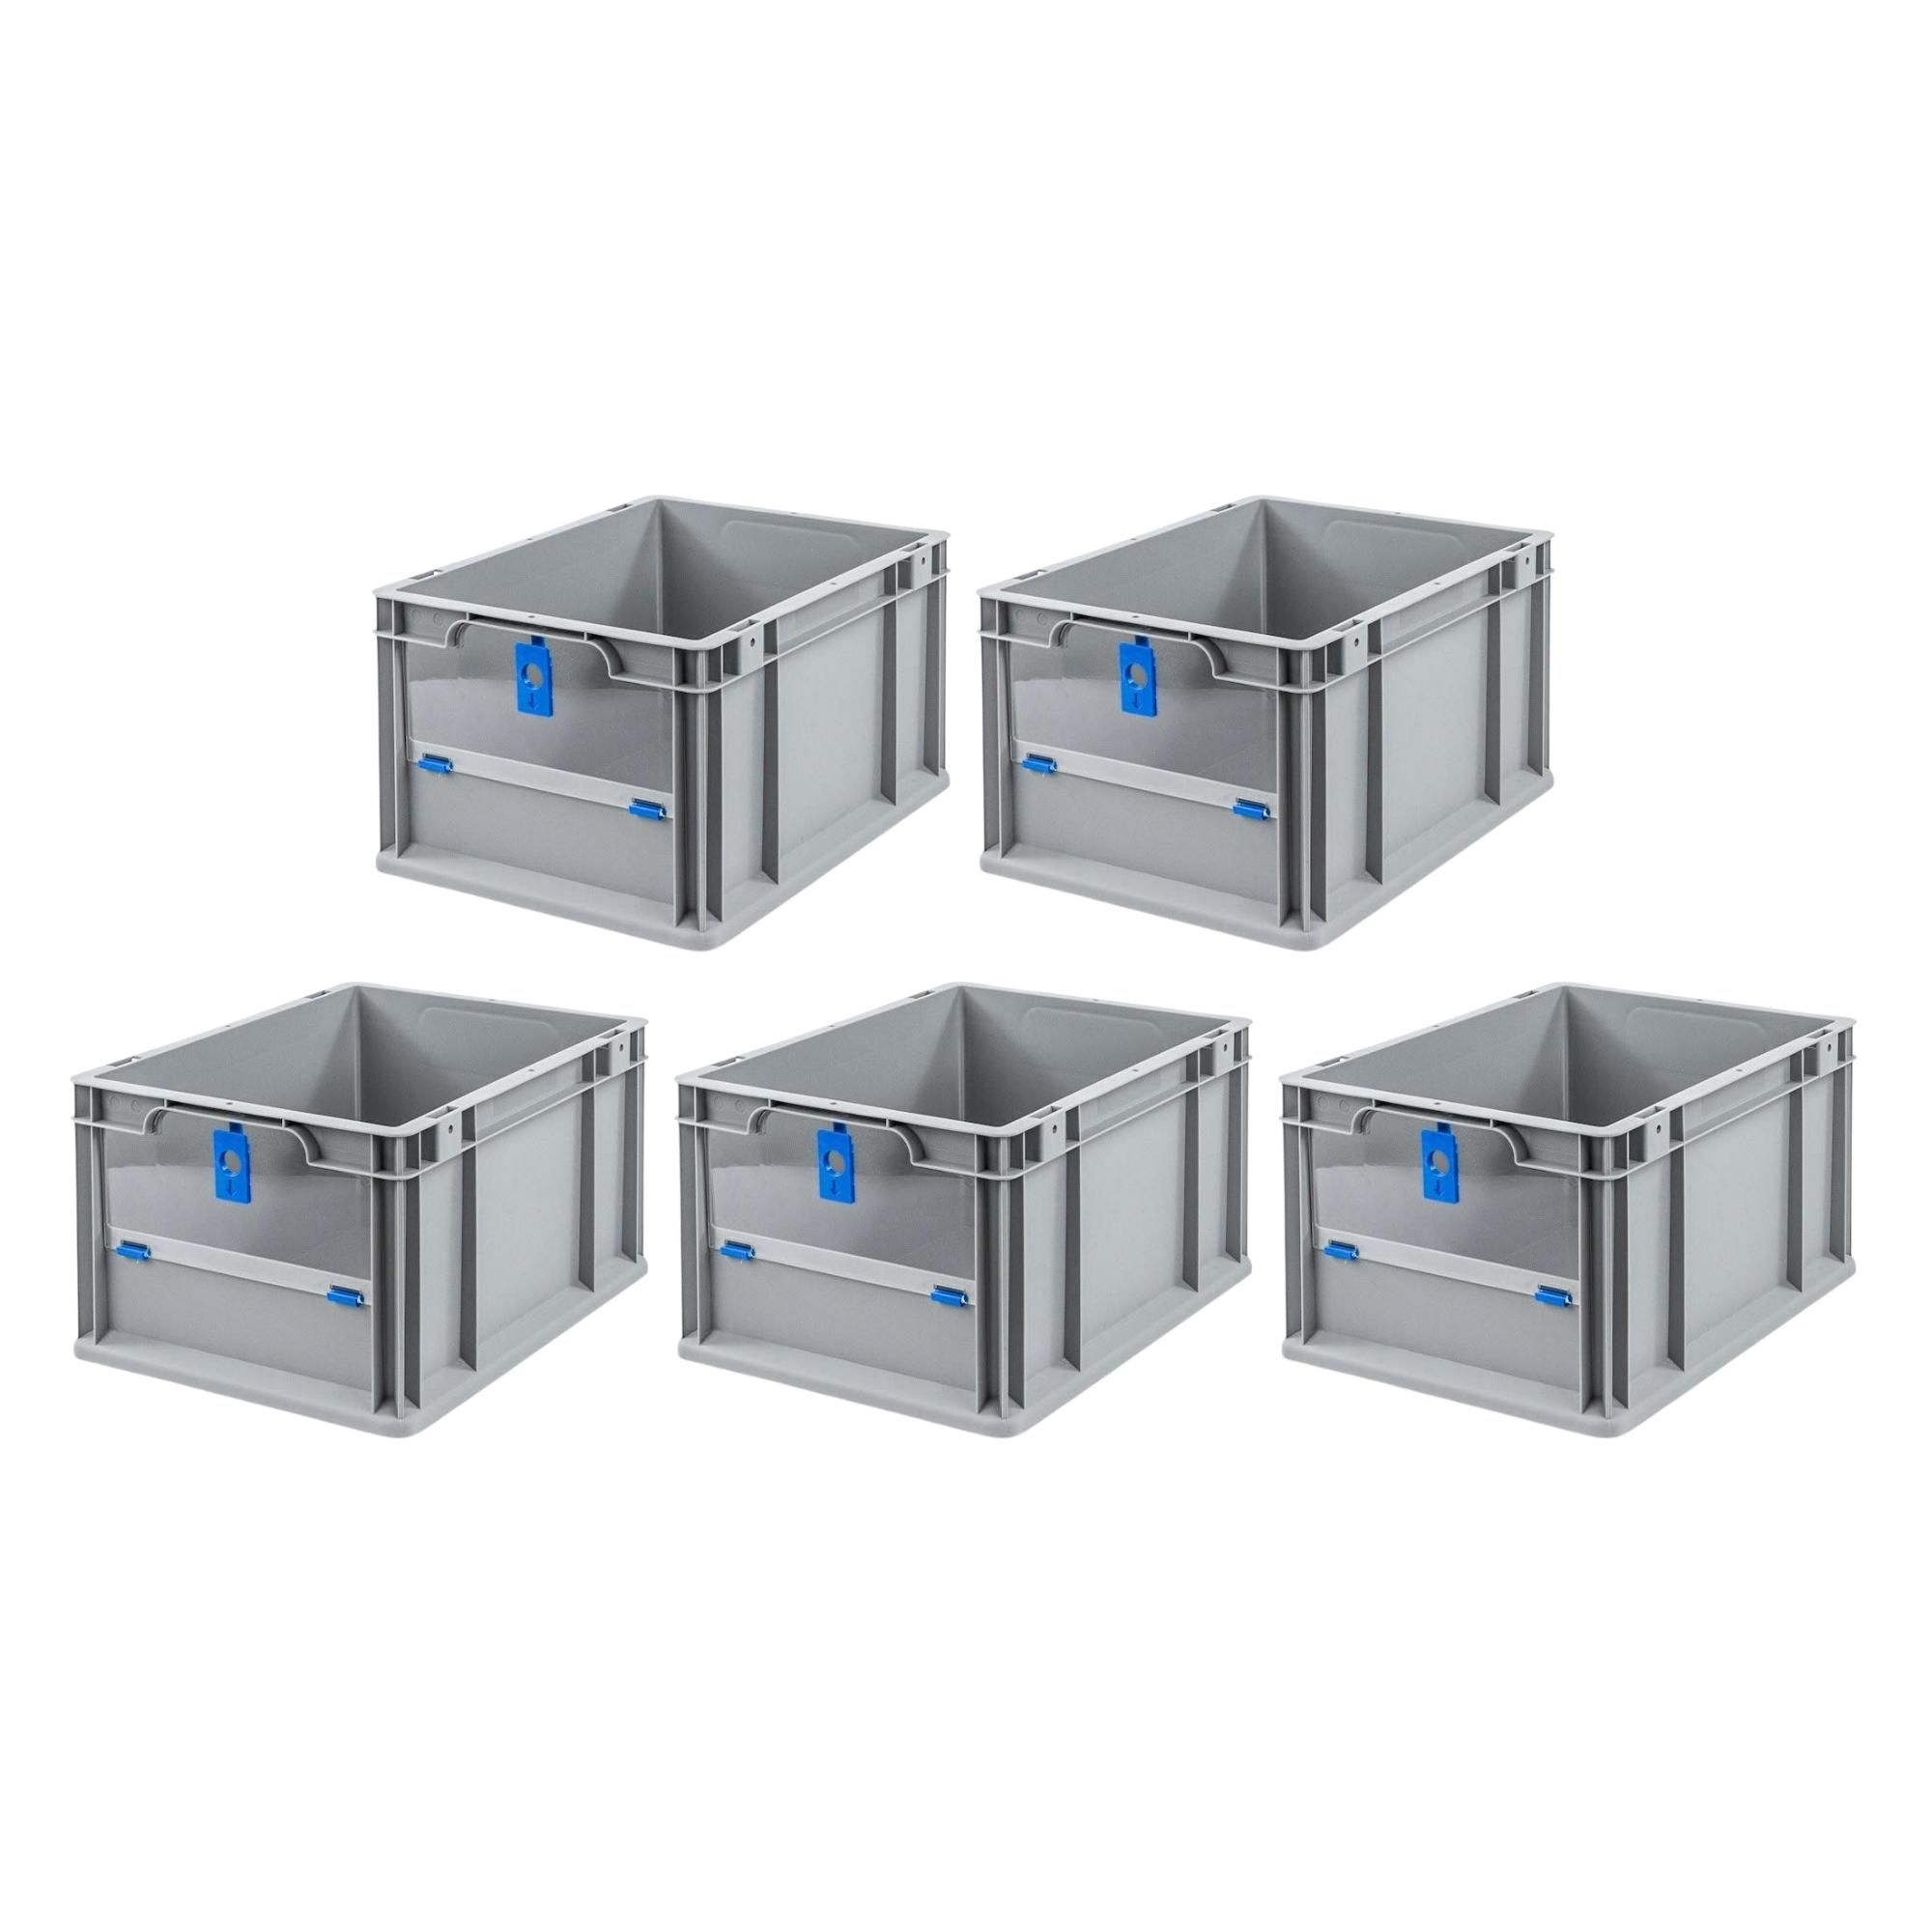 SparSet 5x Eurobox NextGen Insight Cover | HxBxT 22x30x40 | 20 Liter | Niedrig/Blau | Eurobehälter, Transportbox, Transportbehälter, Stapelbehälter